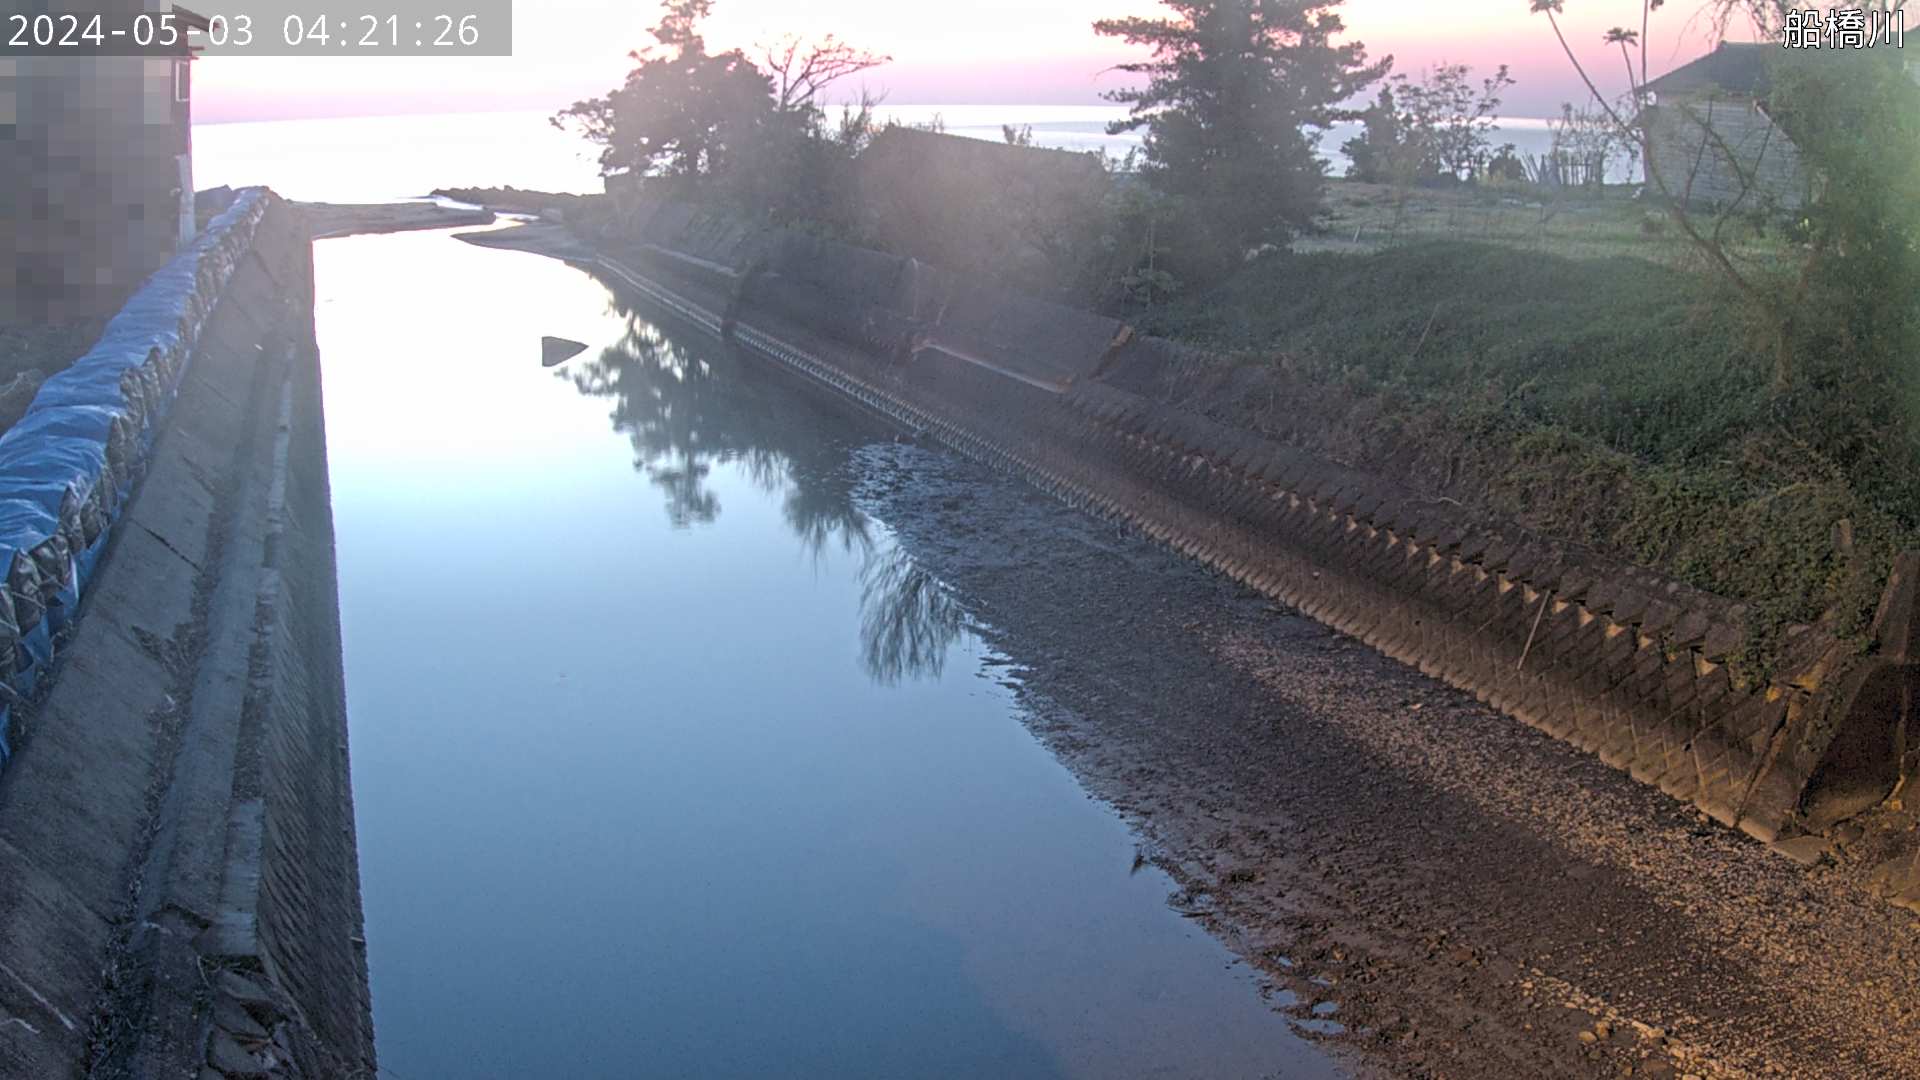 石川県の海ライブカメラ｢６舟橋川河口※｣のライブ画像